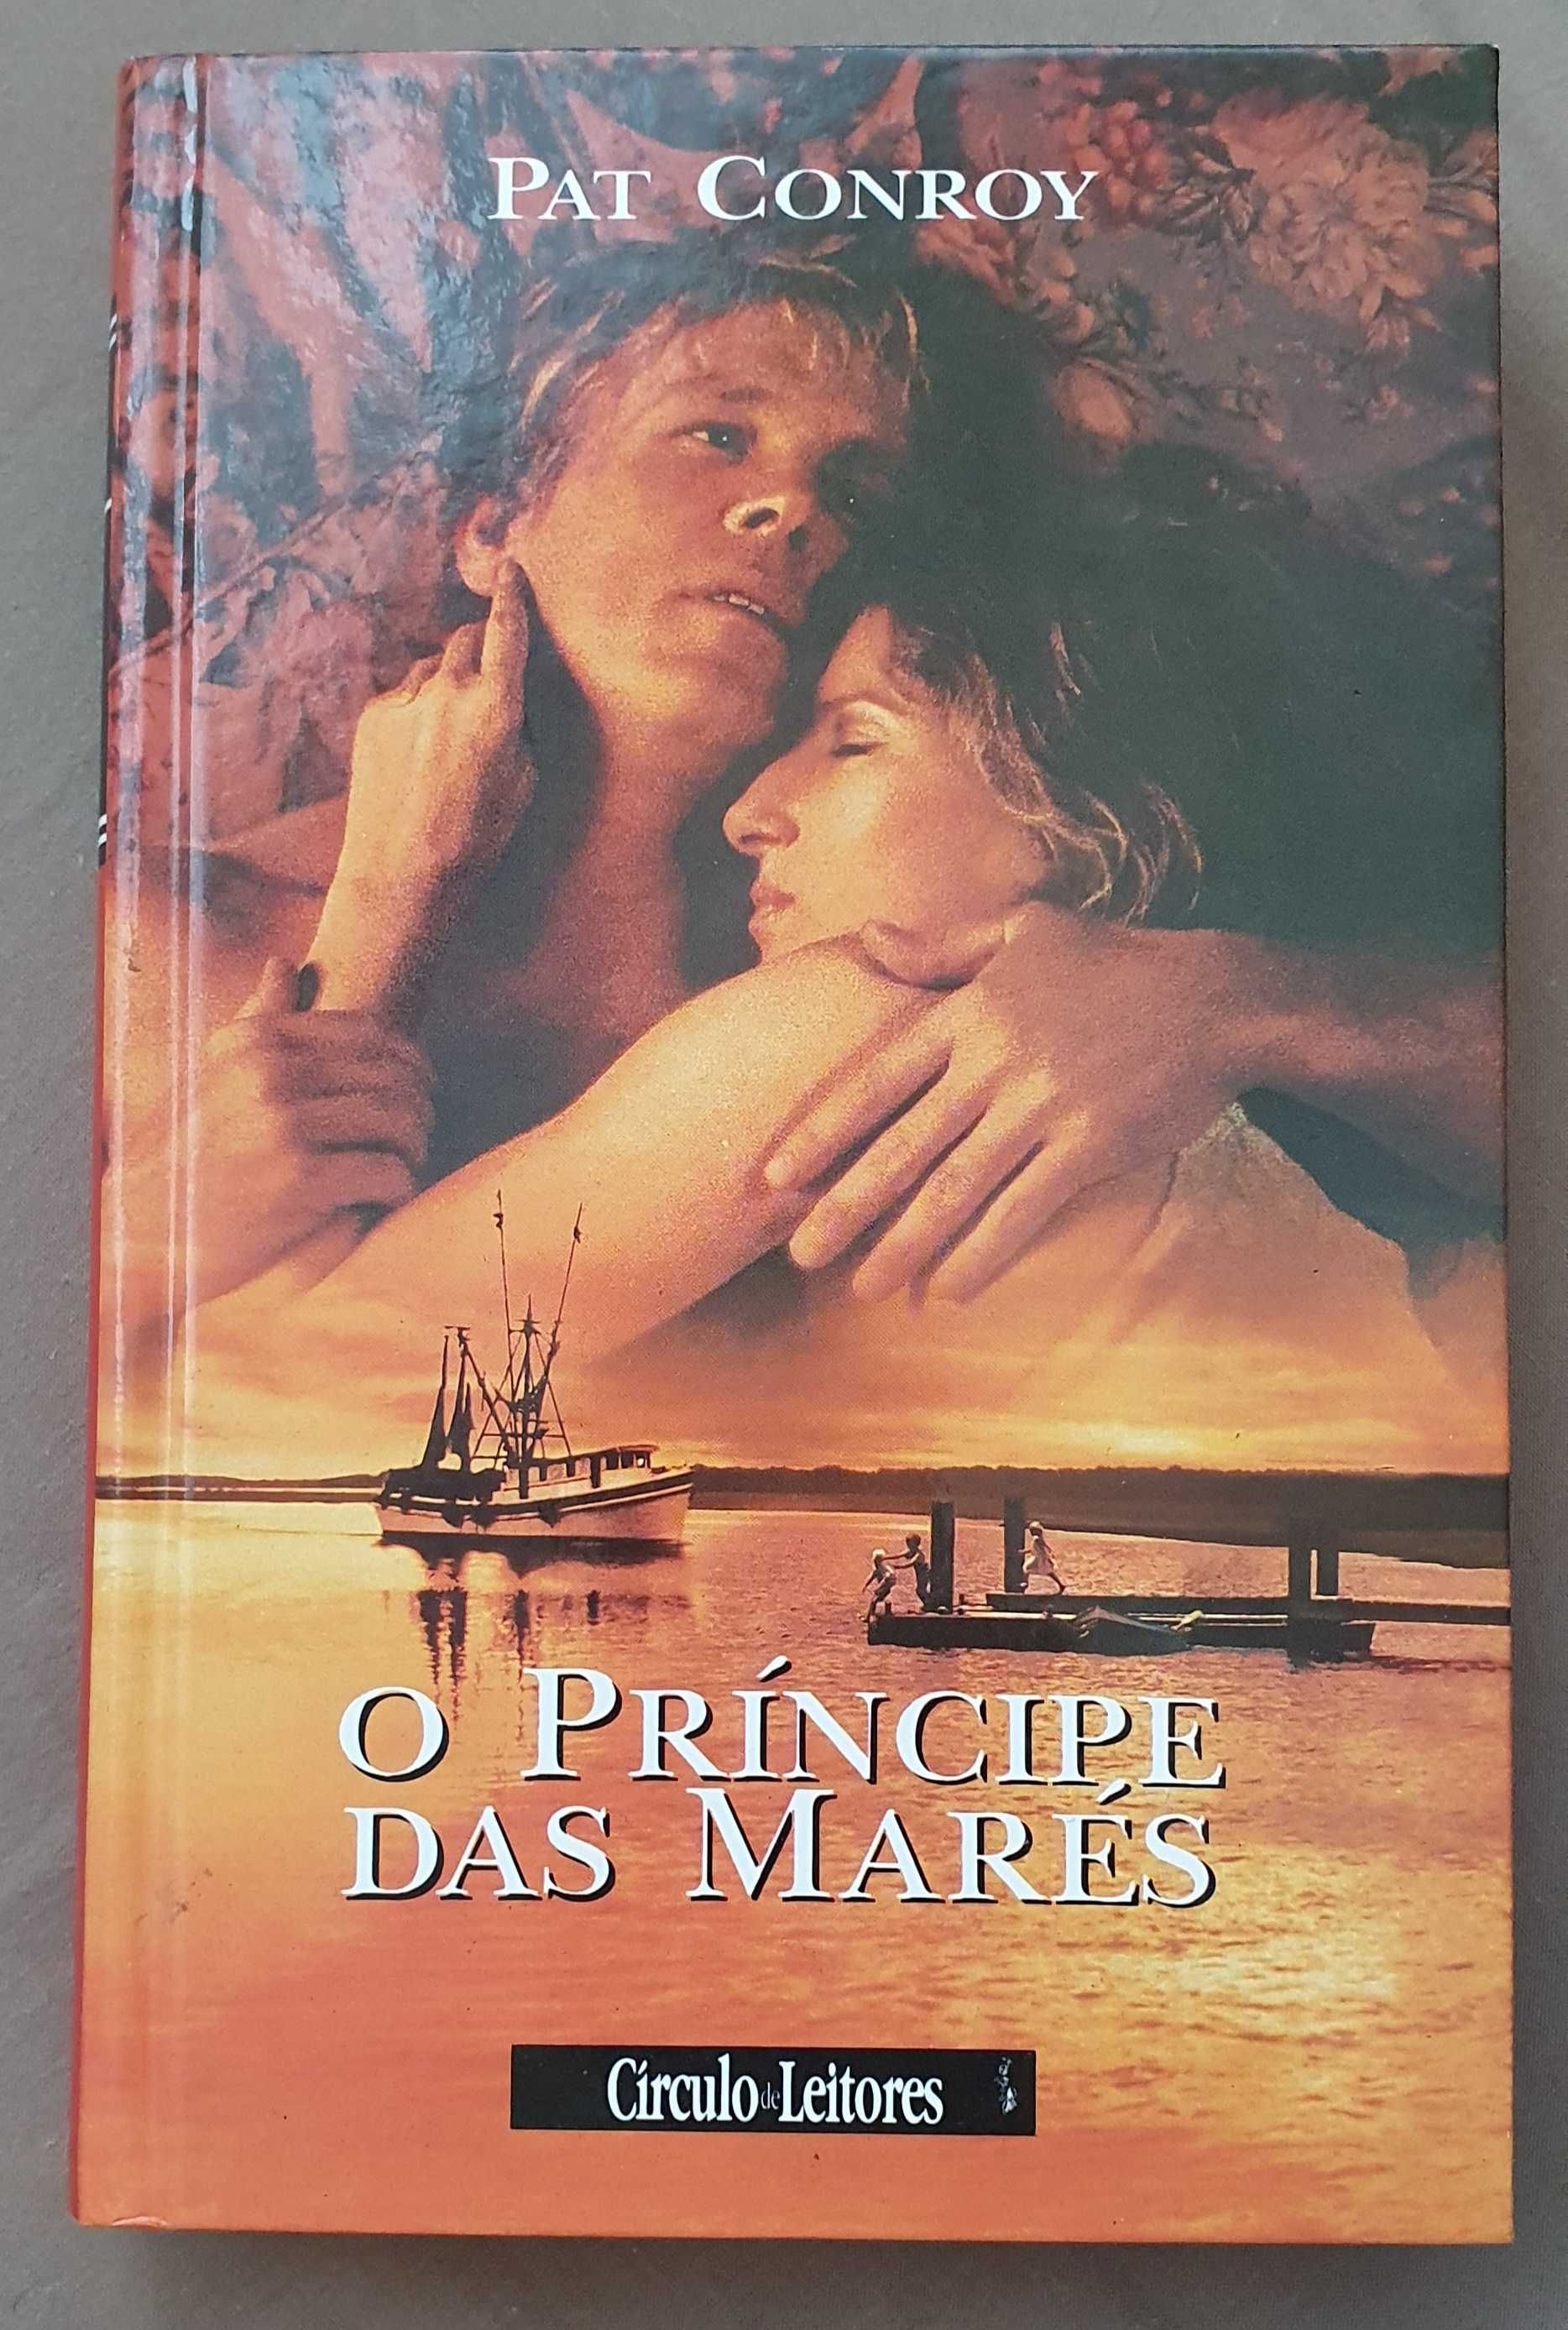 Livros vários "O Príncipe das Marés" e outros